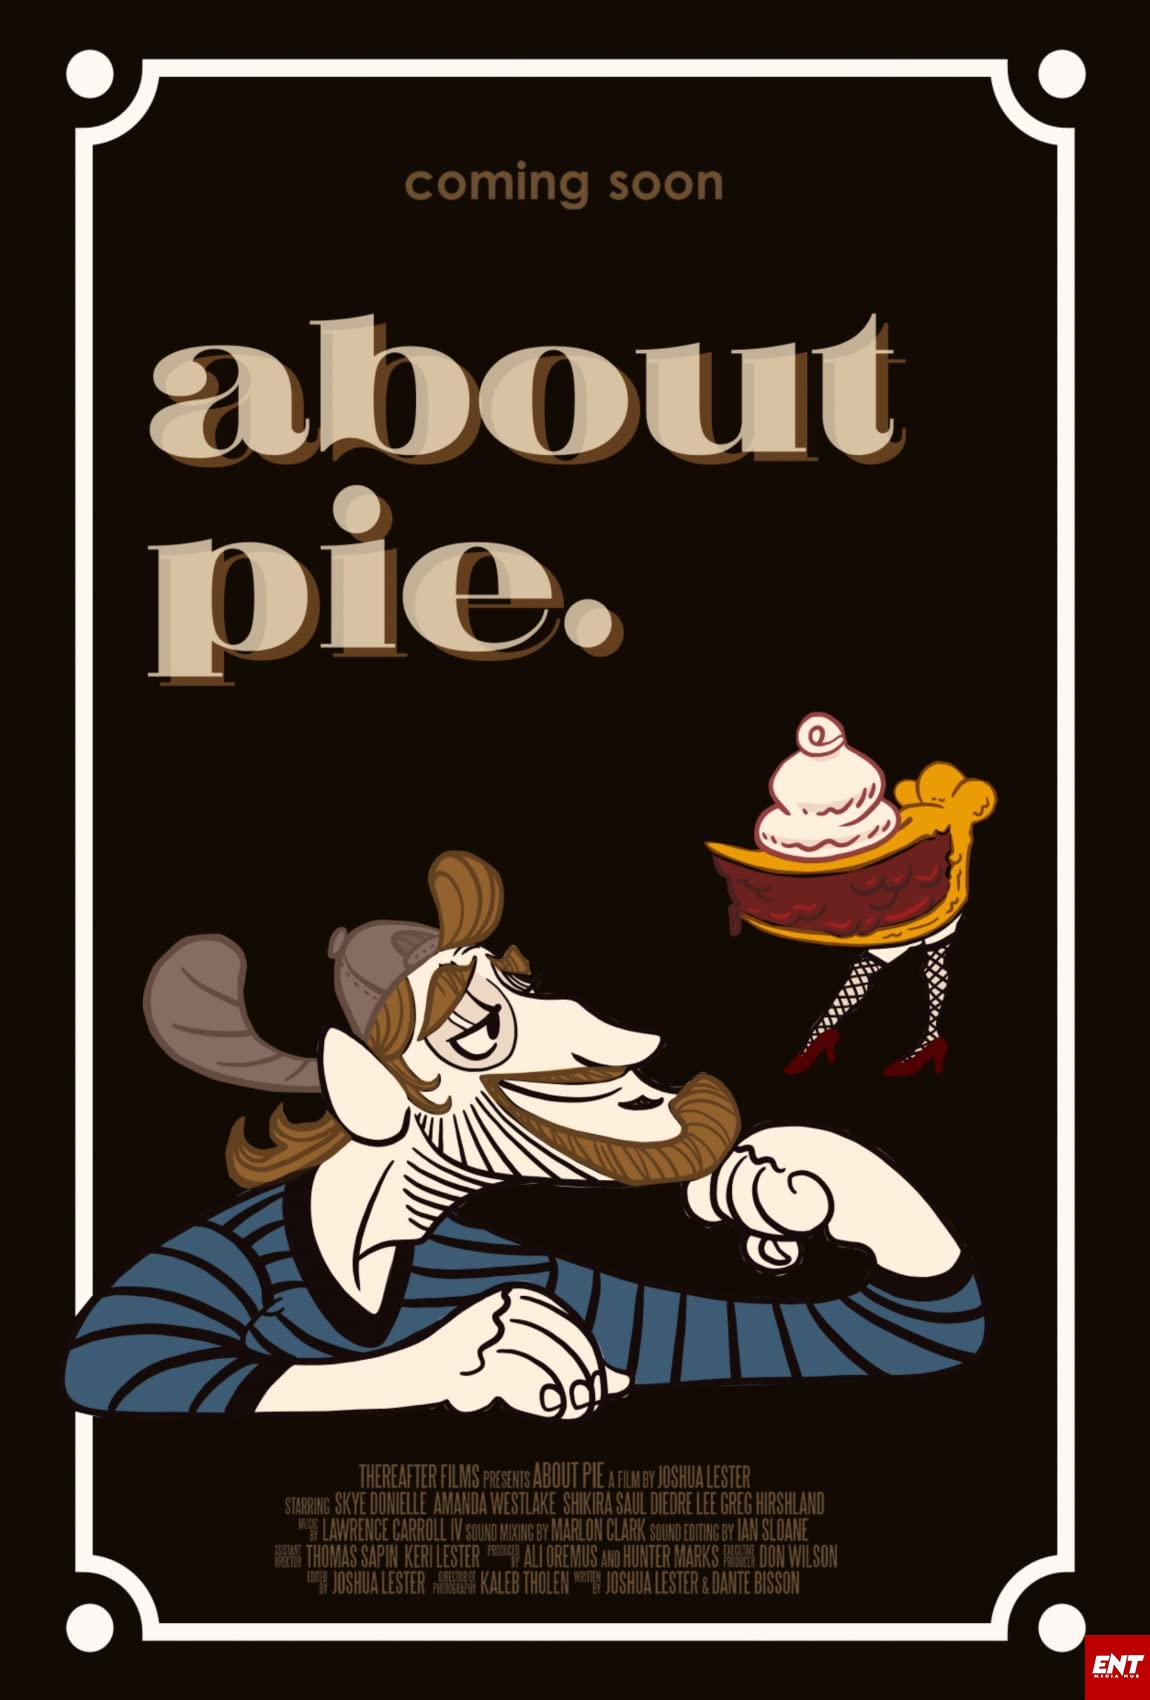 MOVIE : About Pie (2021)